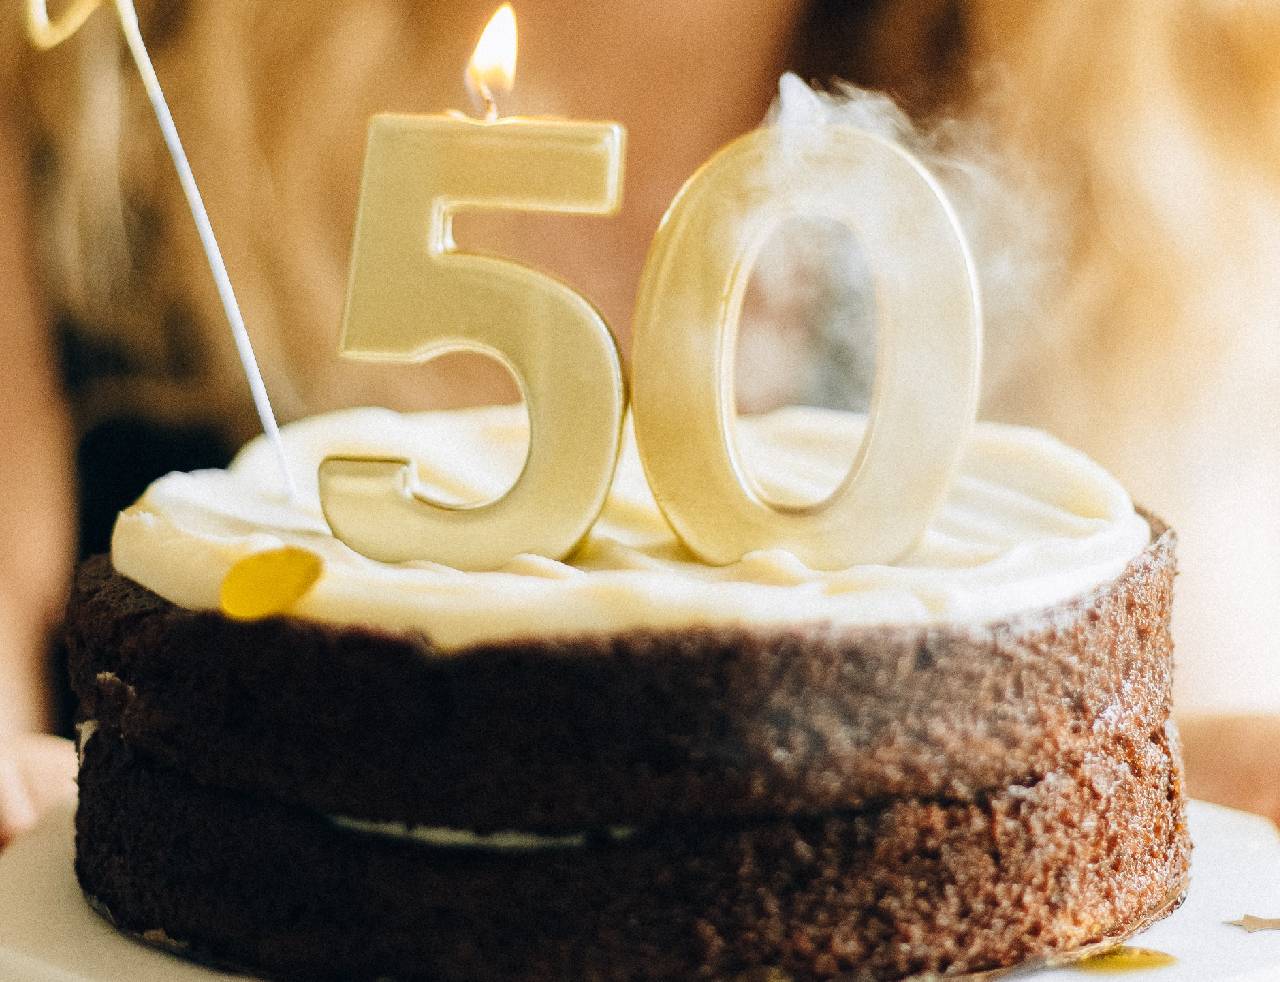 Come festeggiare i tuoi 50 anni: idee e consigli per organizzare l